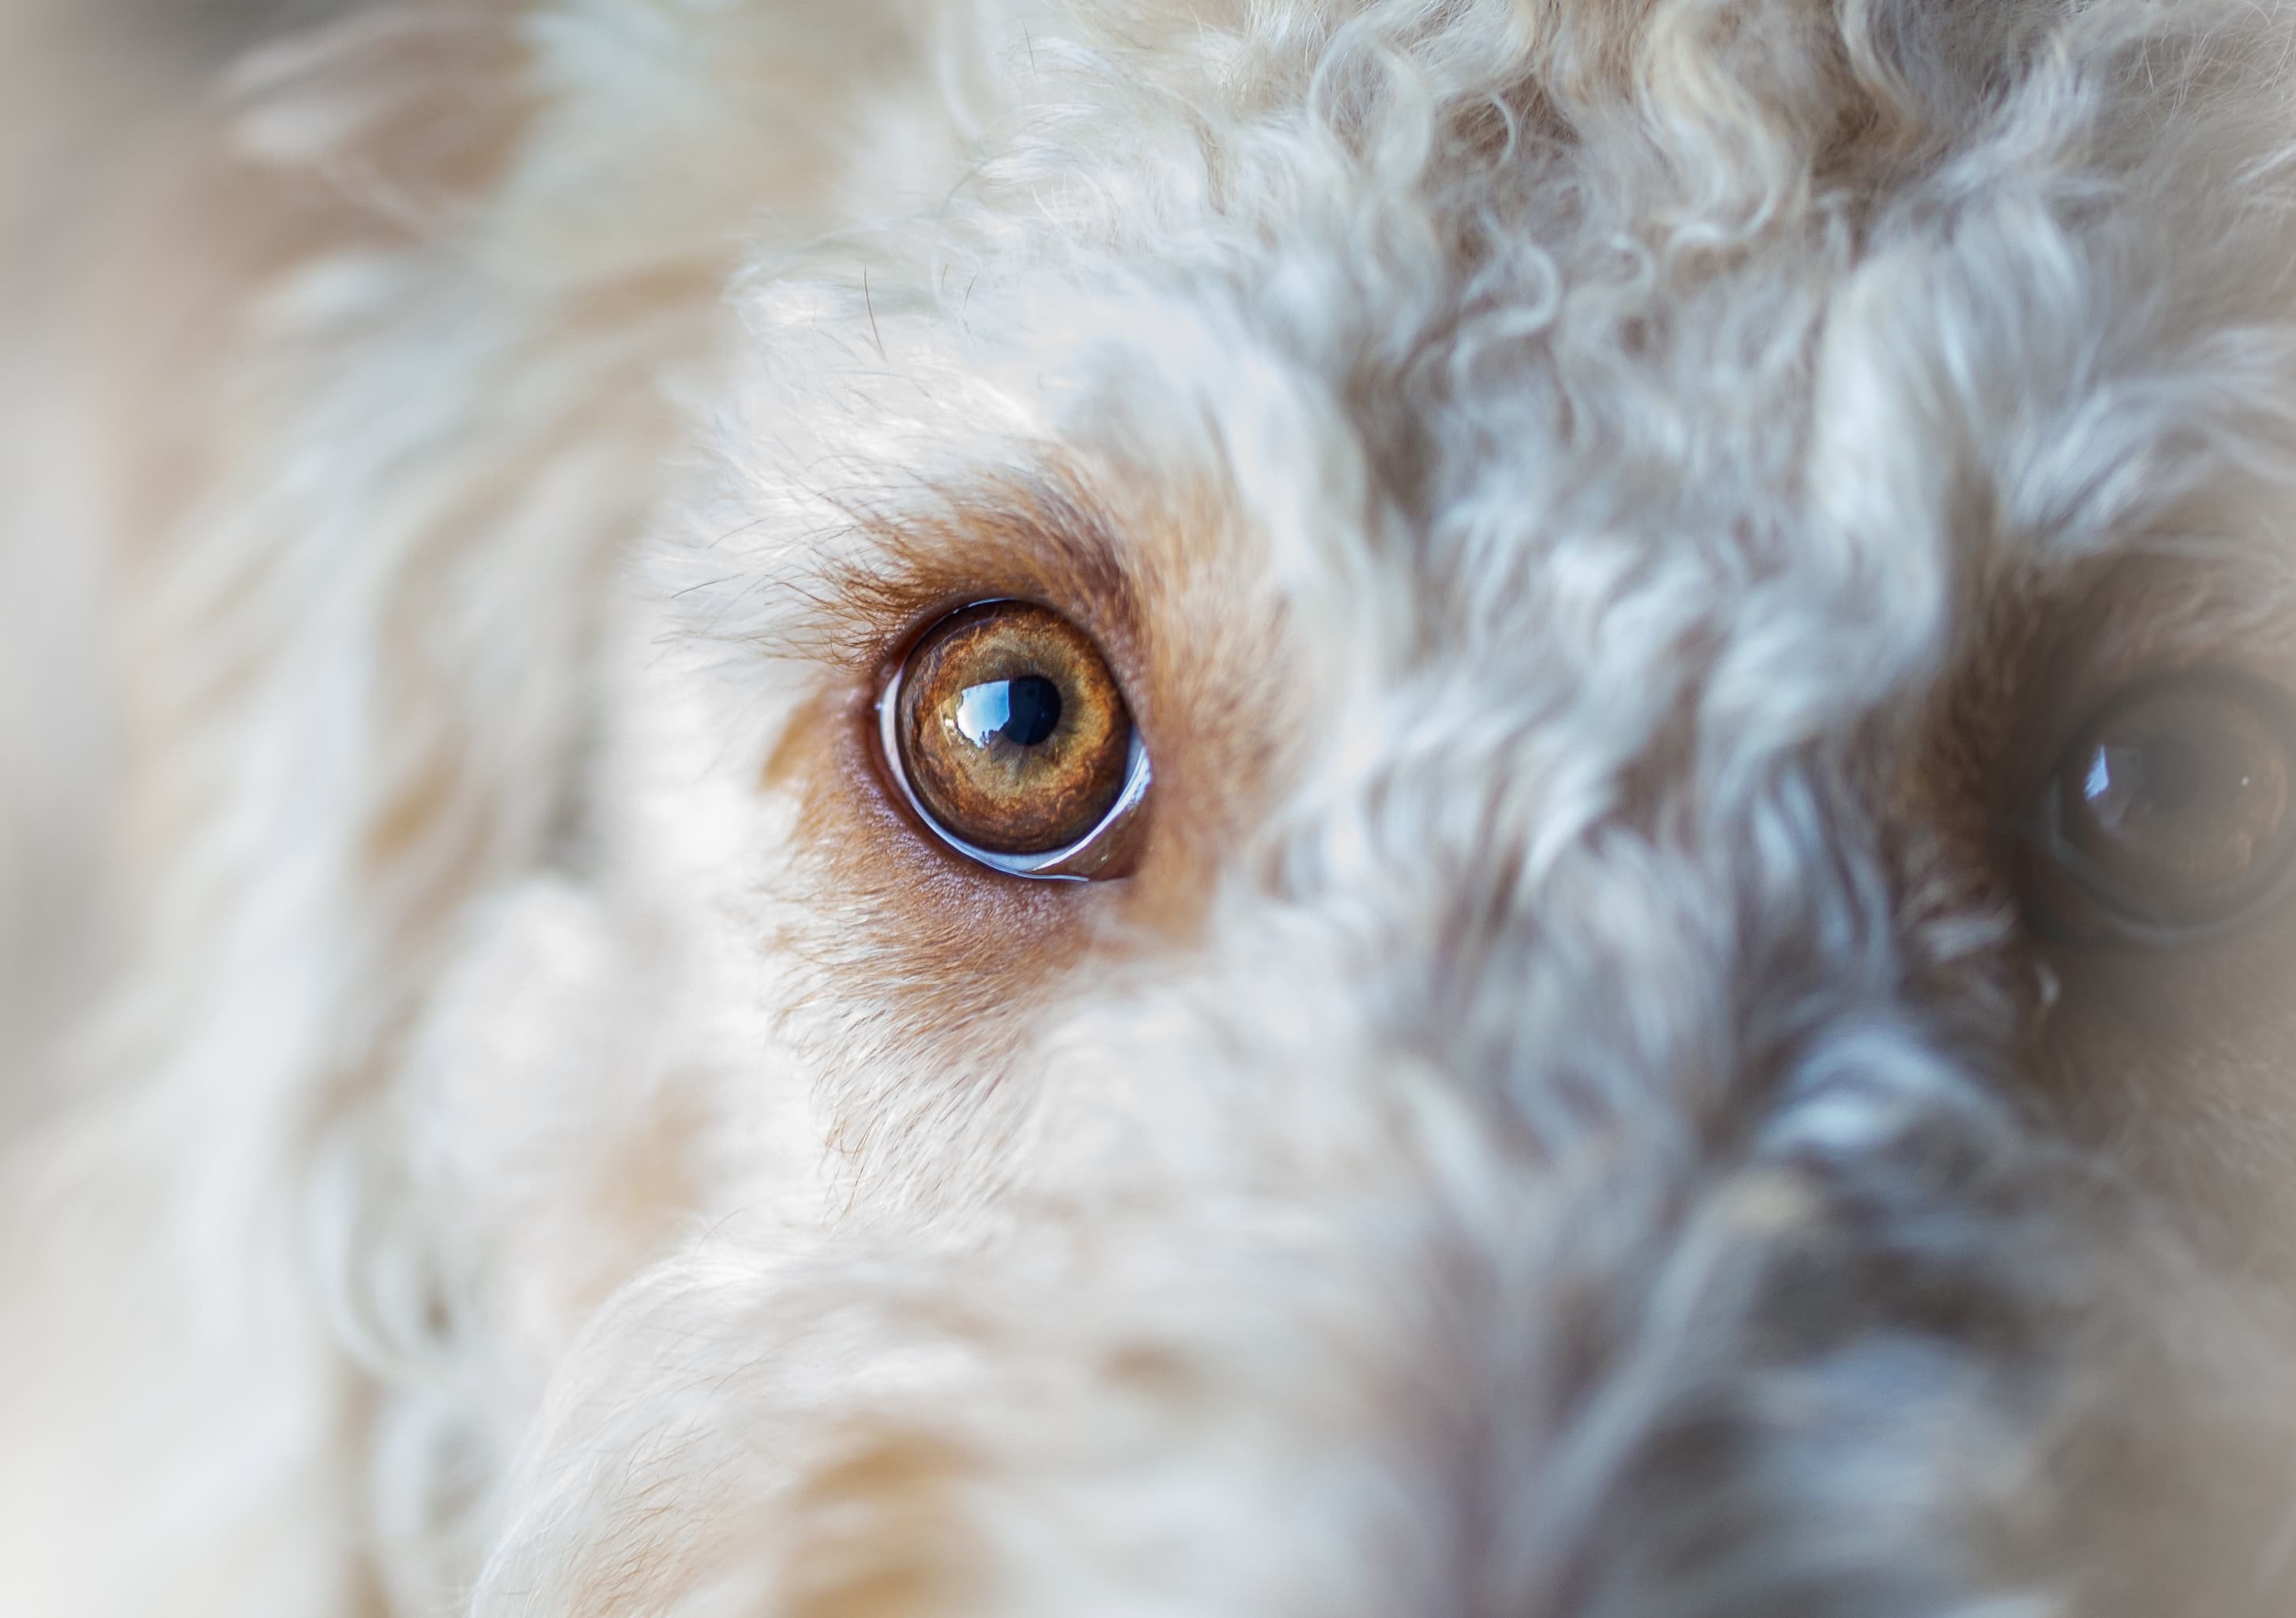 Lágrima ácida em cães: entenda as causas